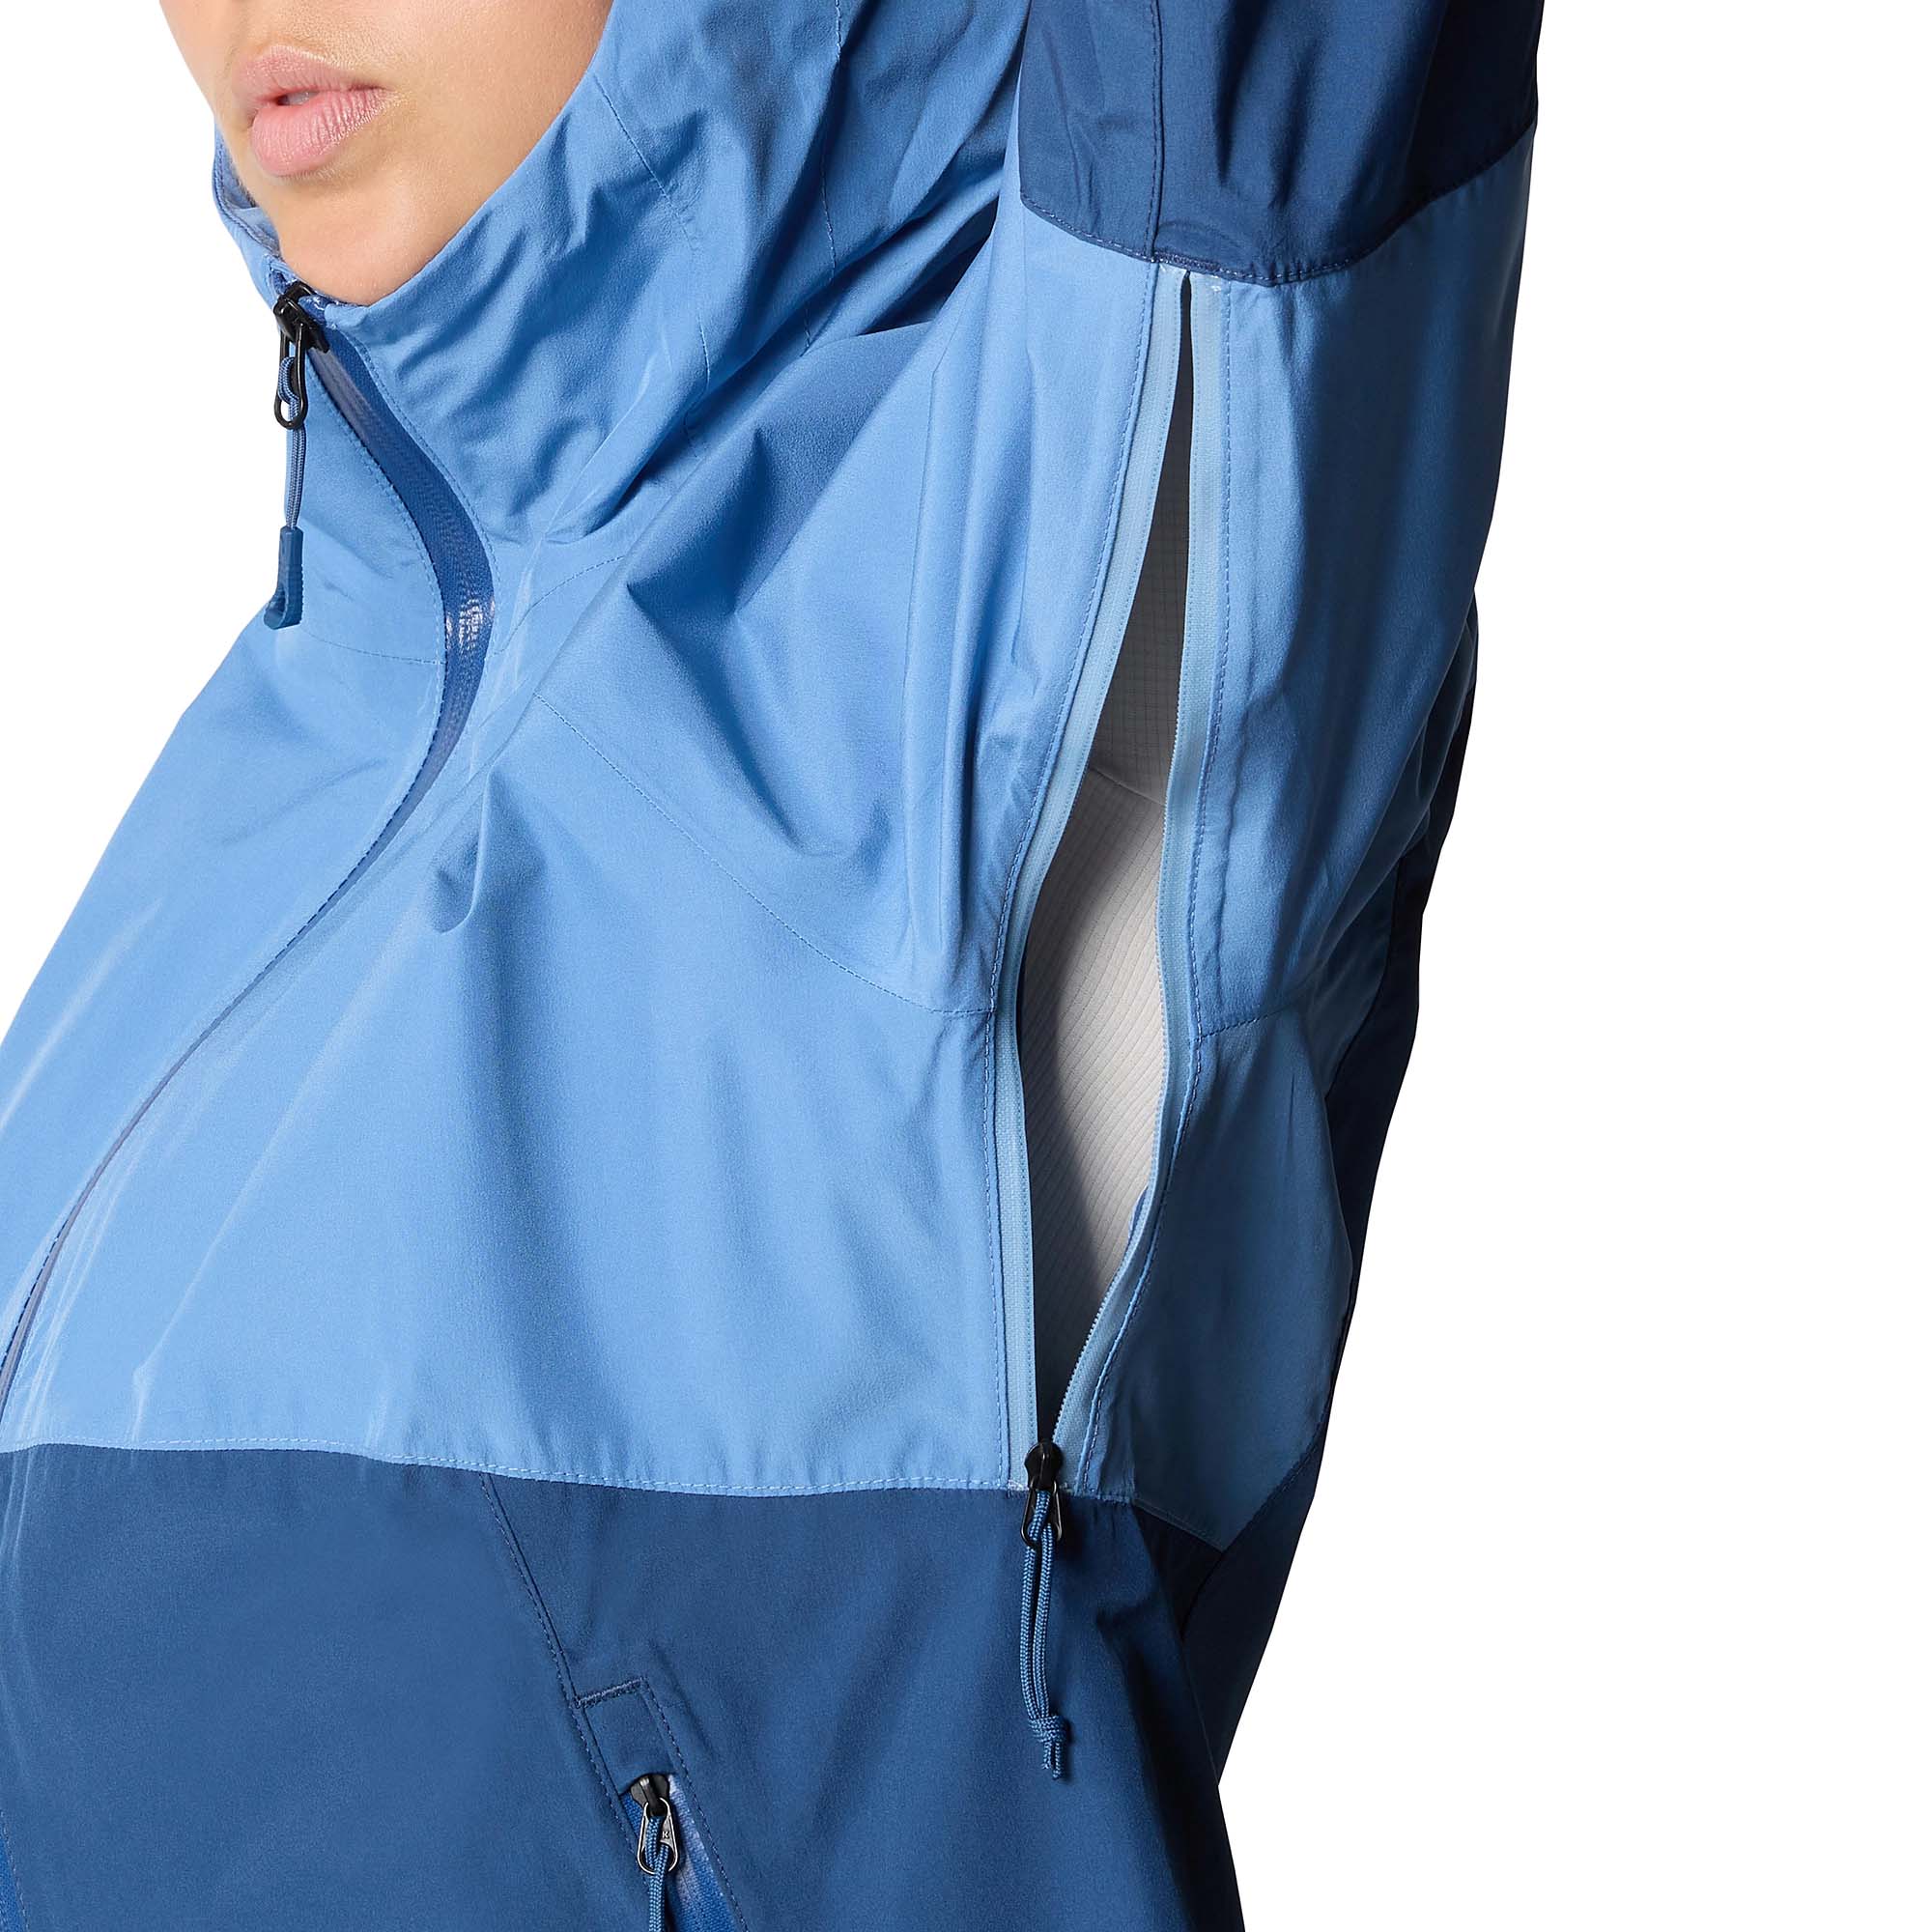 The North Face Diablo Dynamic Women's Waterproof Zip-In Jacket